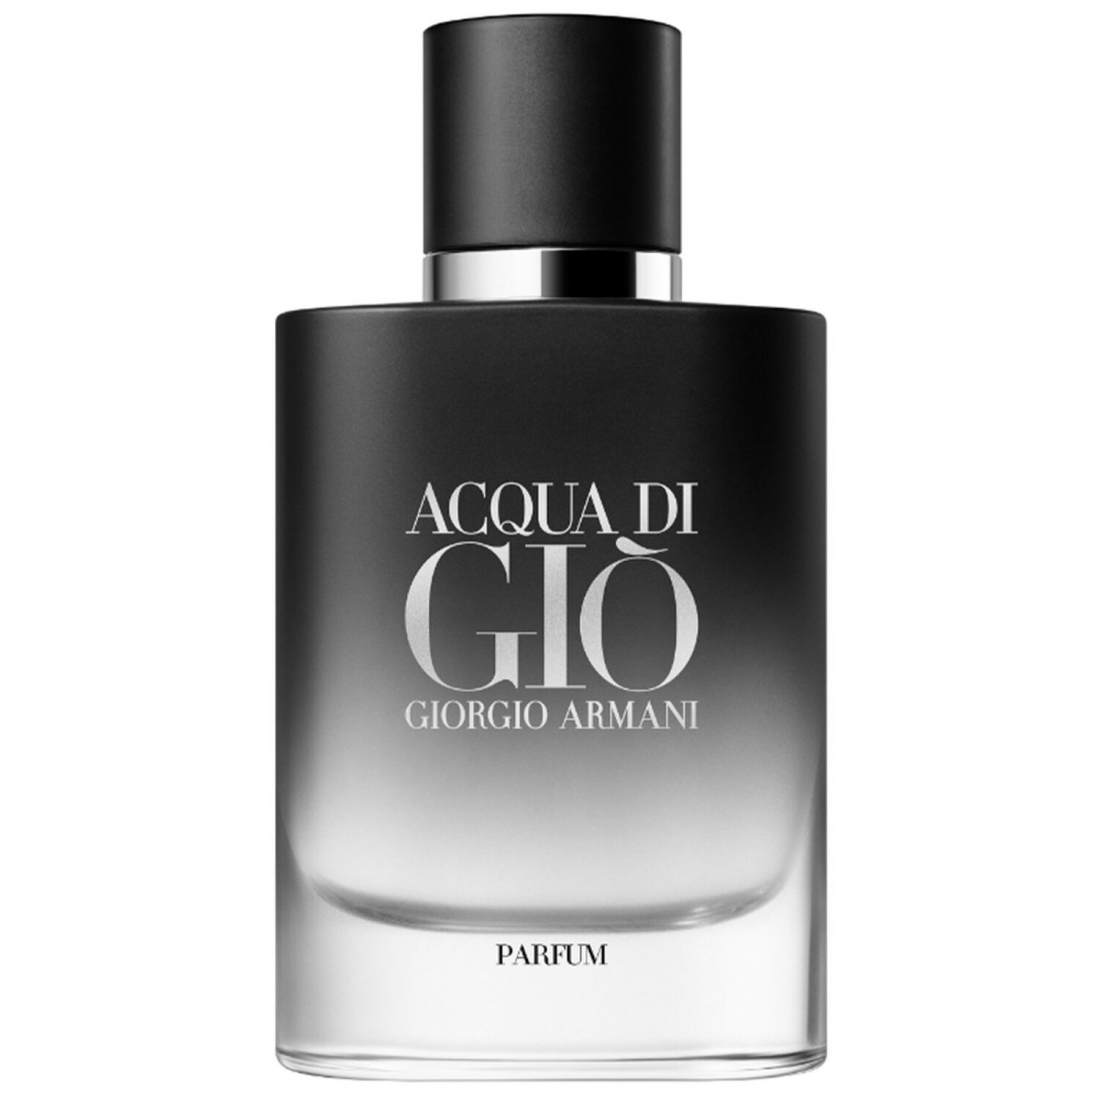 'Acqua di Giò' Perfume - Refillable - 75 ml